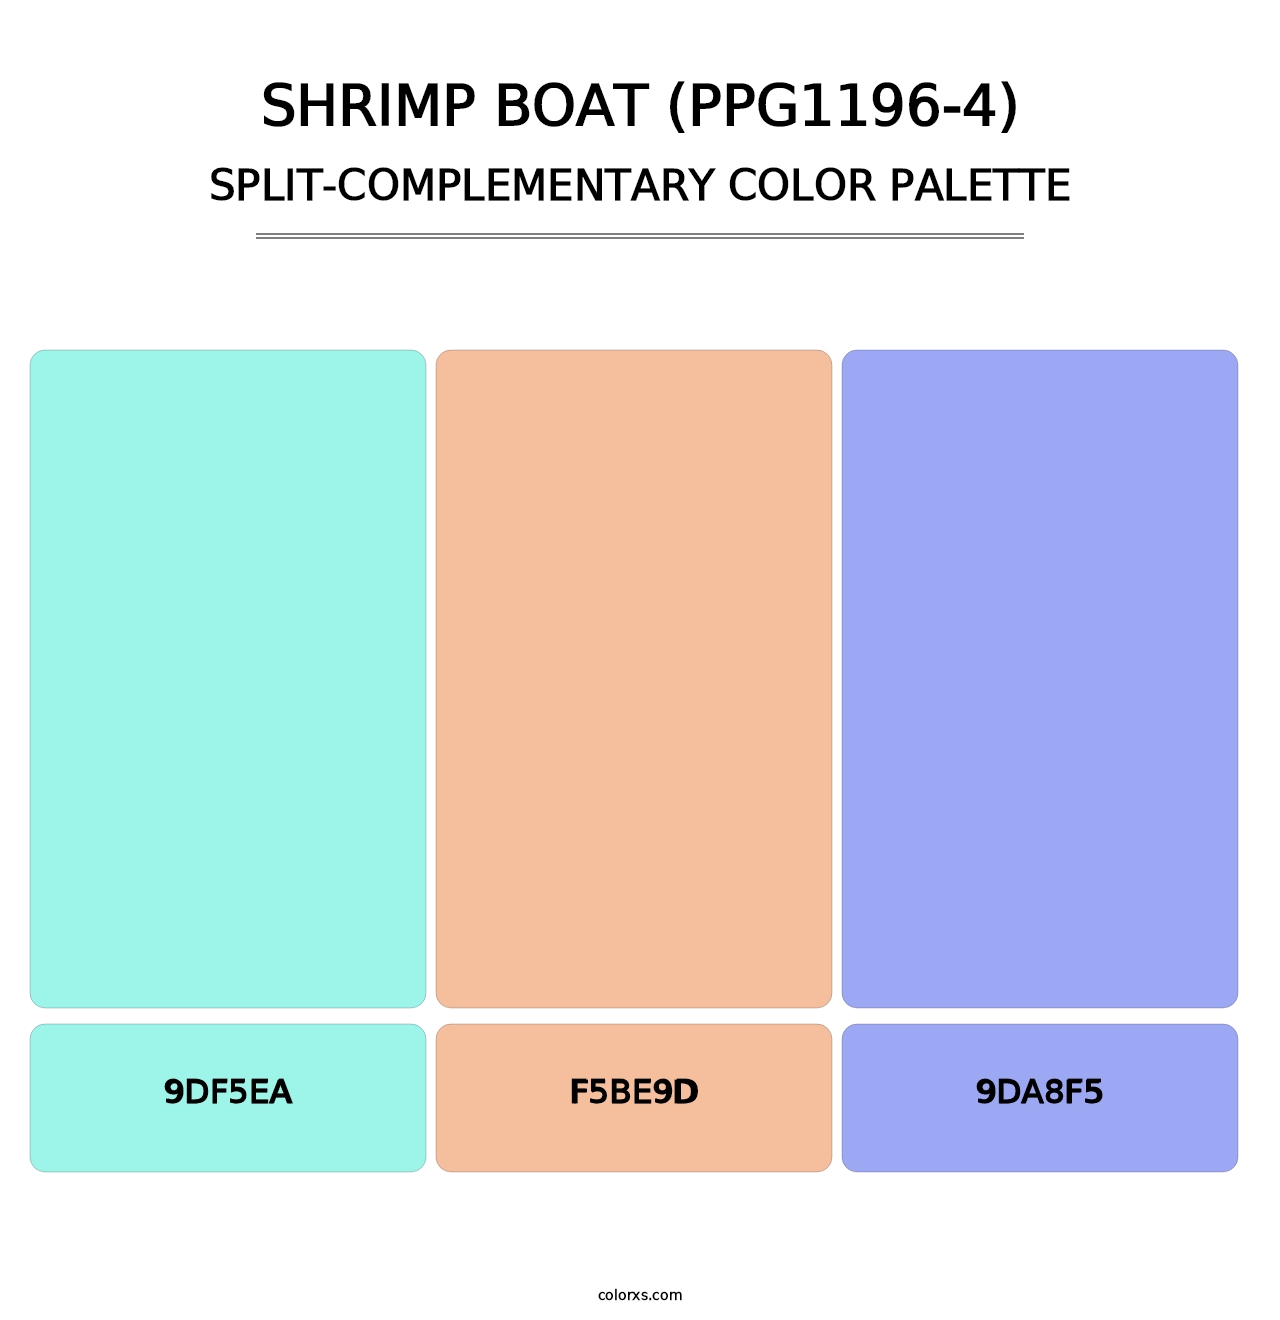 Shrimp Boat (PPG1196-4) - Split-Complementary Color Palette